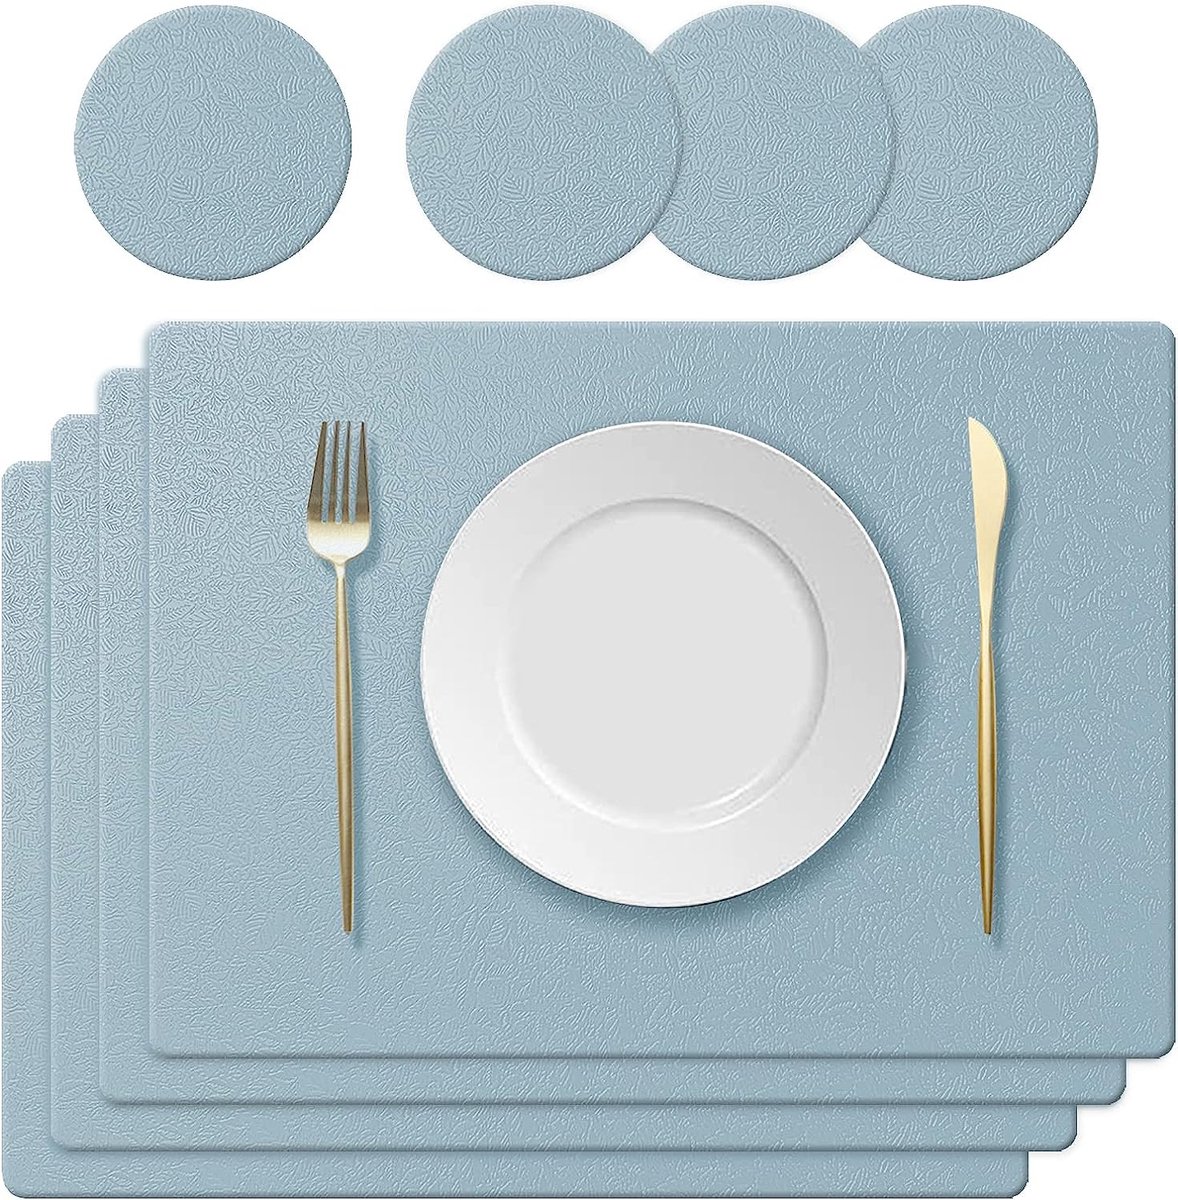 KERYCHIN 4 placemats van siliconen + 4 antislip tafelonderzetters met bladpatroon, hittebestendig 230 °C, waterdichte placemat voor keuken, thuis, restaurant, eettafel, 40 x 30 cm, lichtblauw